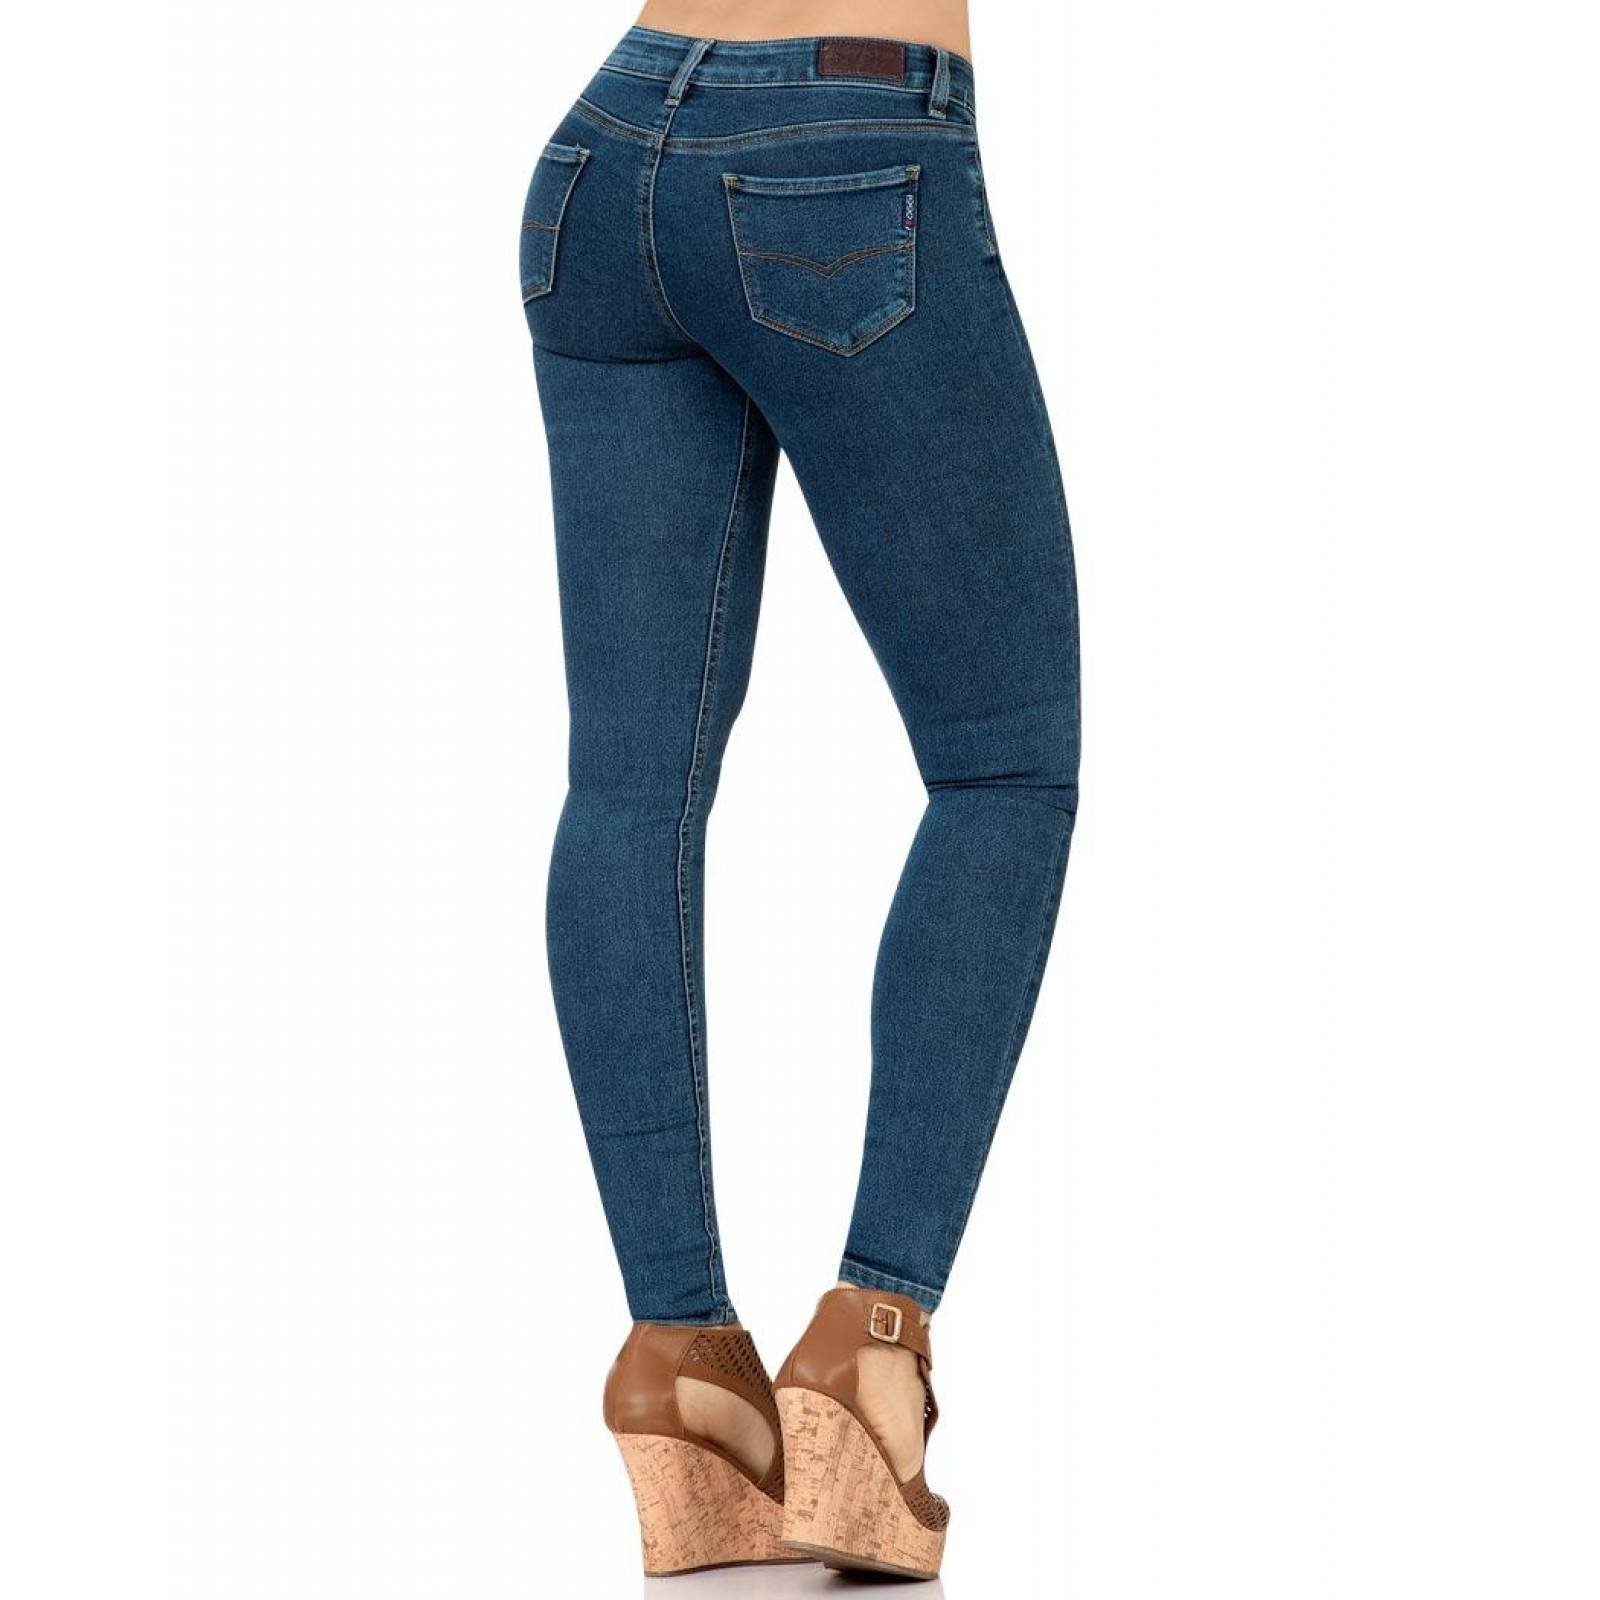 Jeans Básico Mujer Stfashion Gris 51003814 Mezclilla Stretch